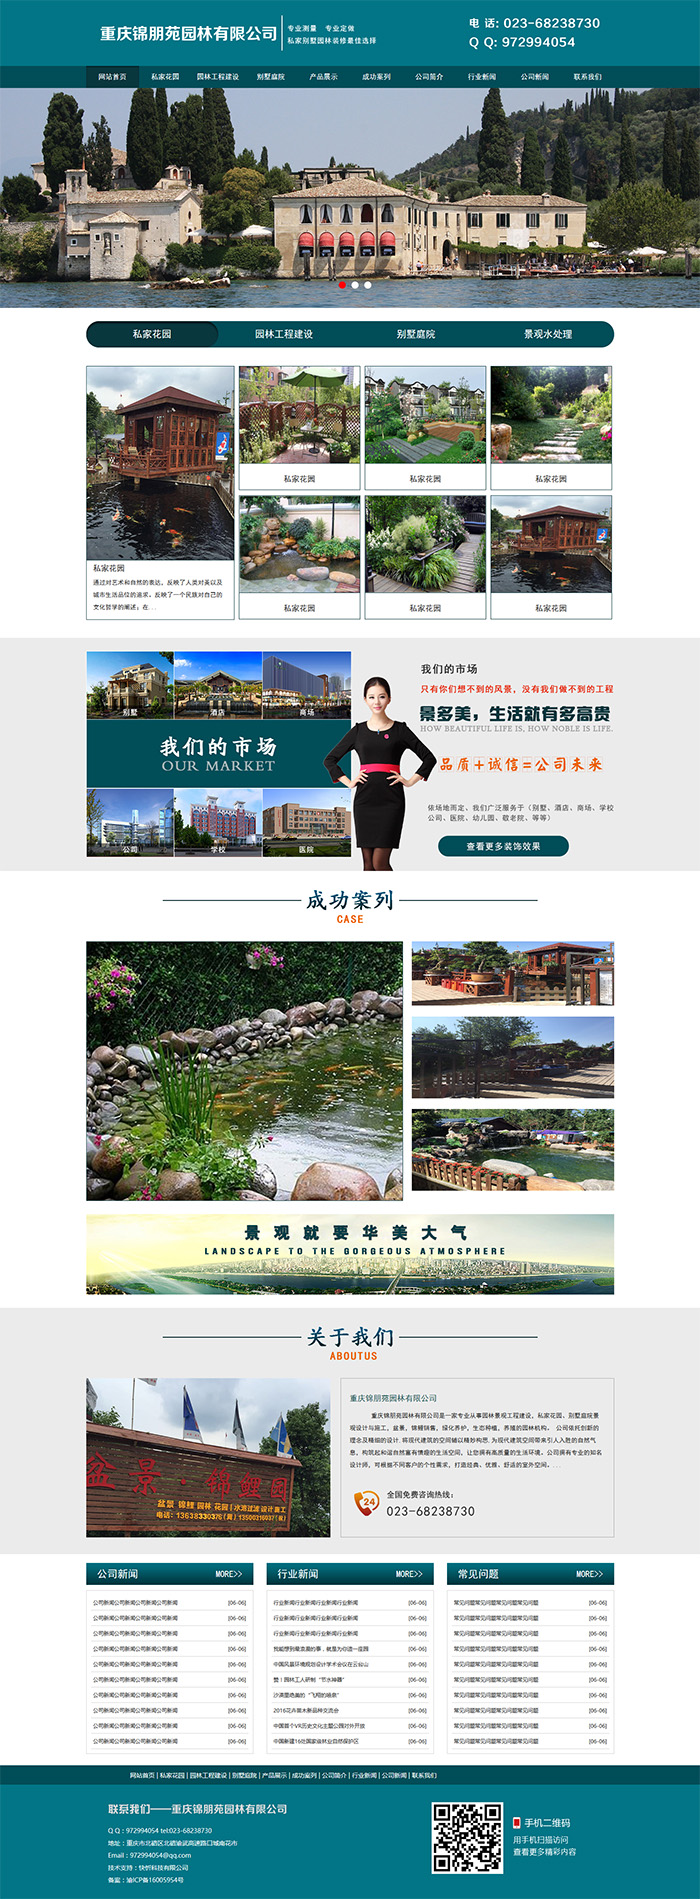 重庆锦朋苑园林有限公司网站建设案例